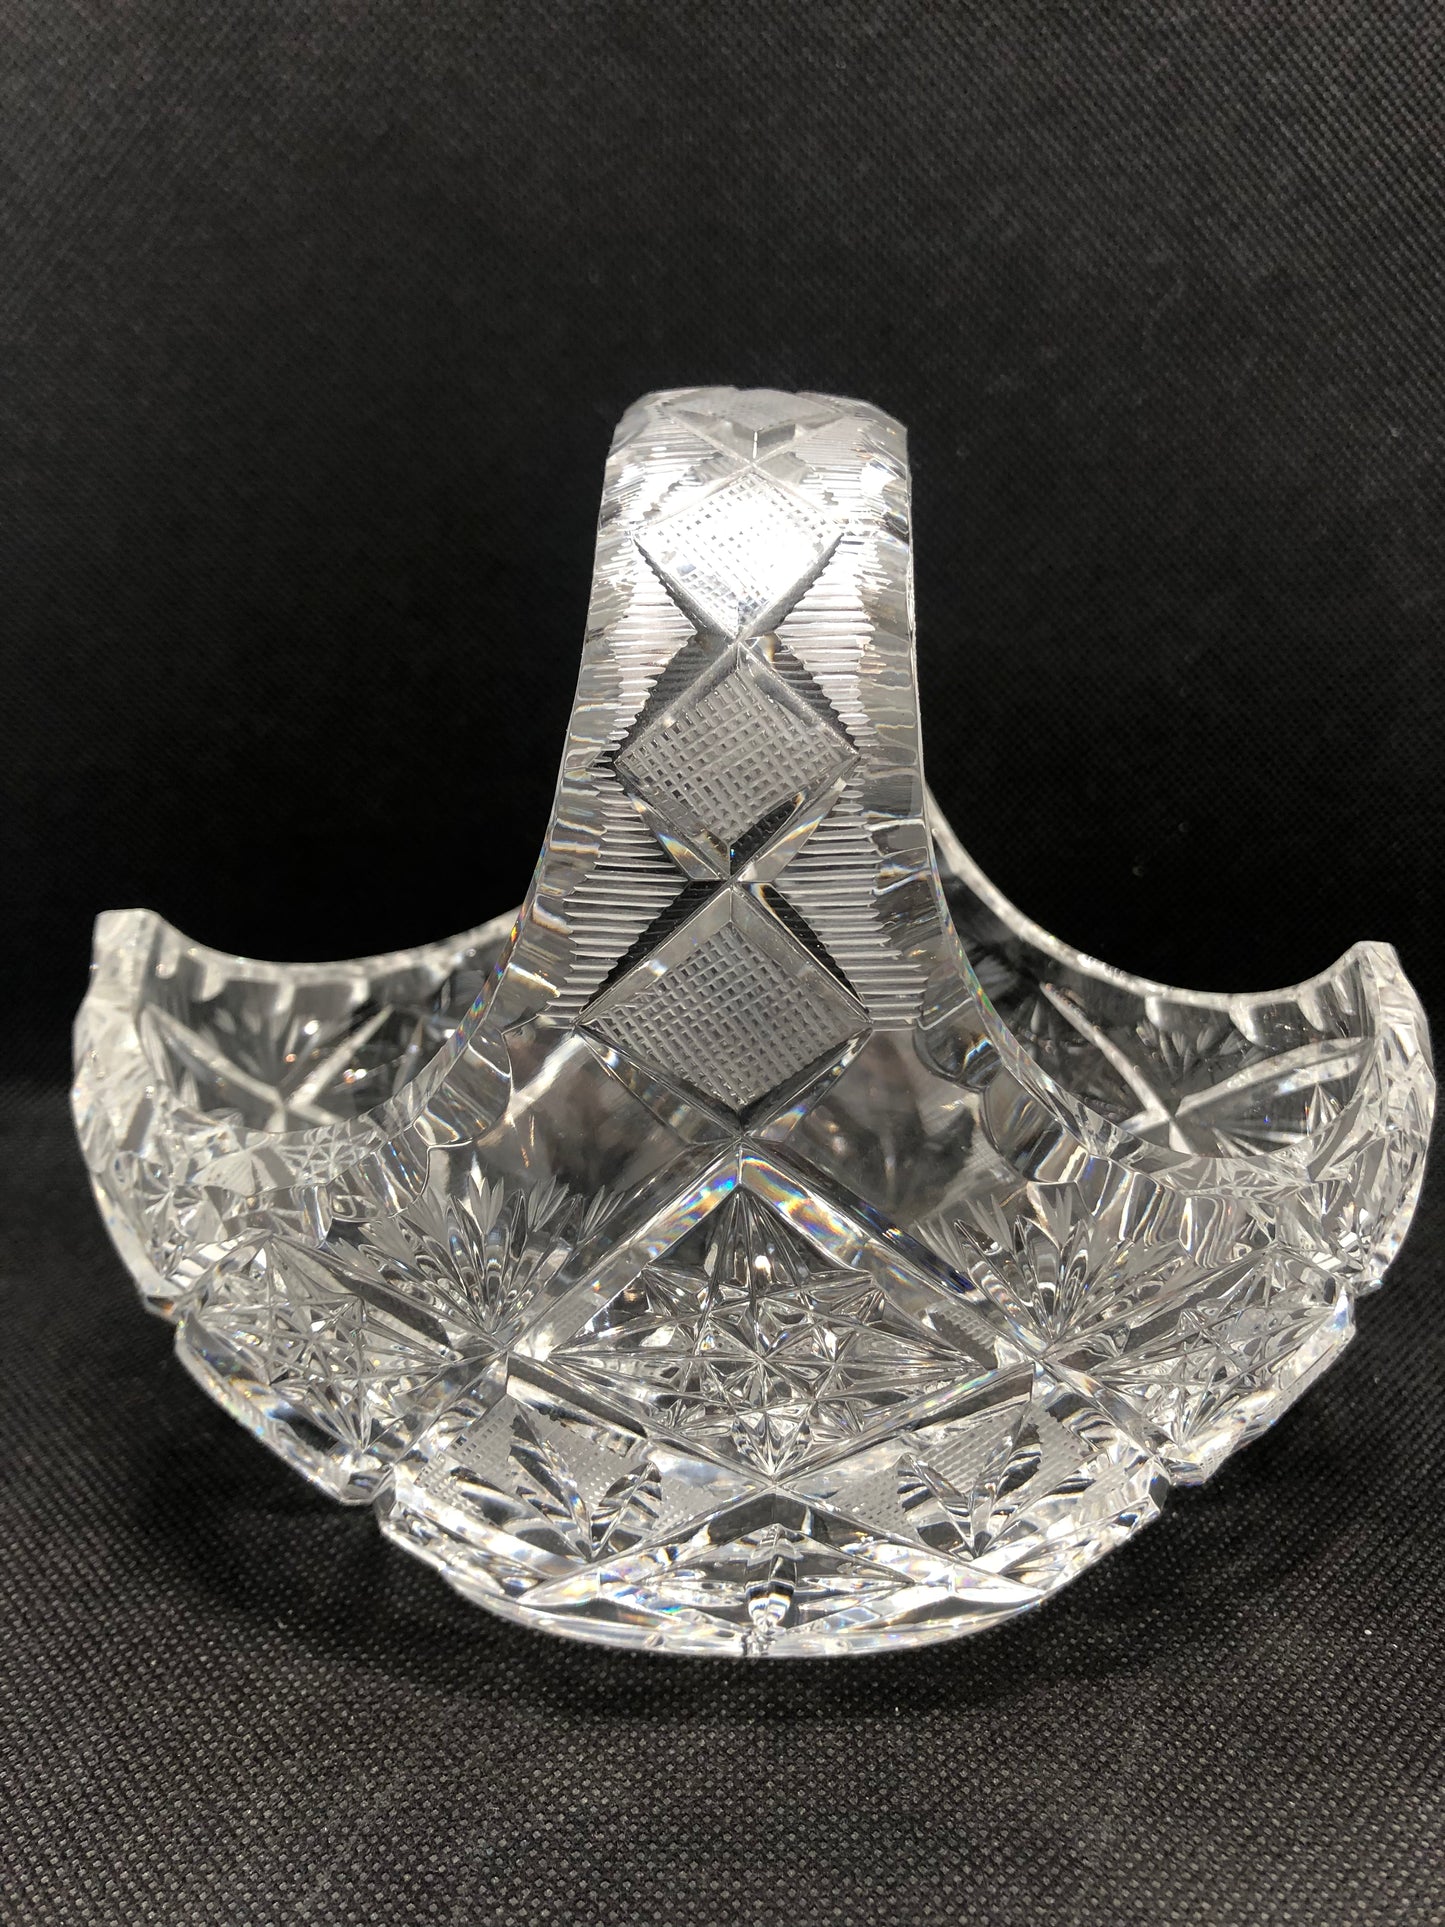 crystal vase handle design